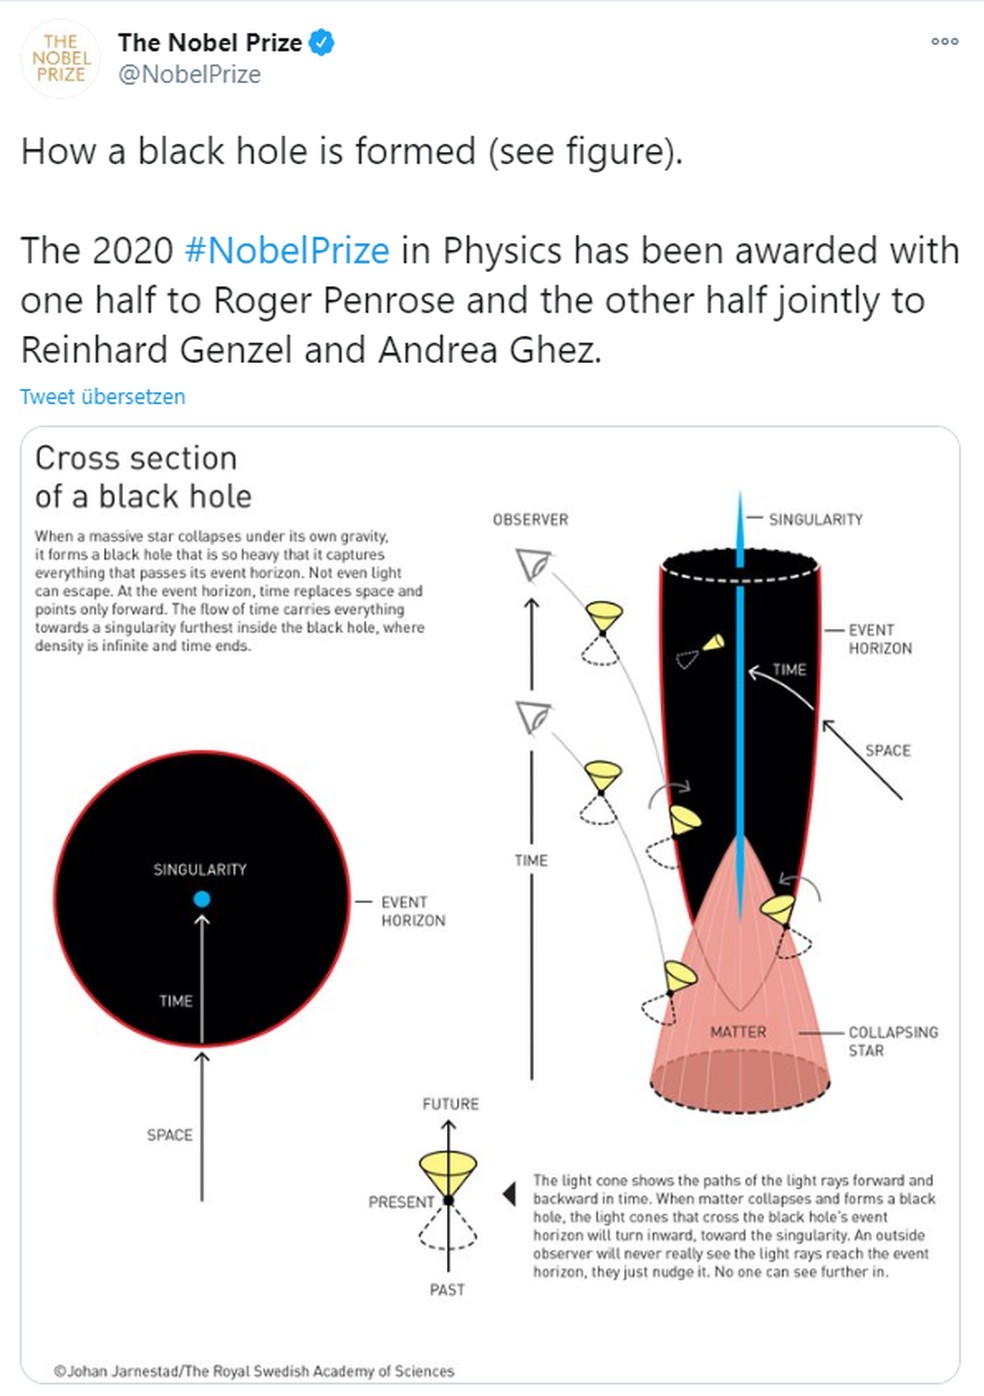 Ilustração do Prêmio Nobel mostra detalhes sobre buracos negros — Foto: Reprodução/The Nobel Prize